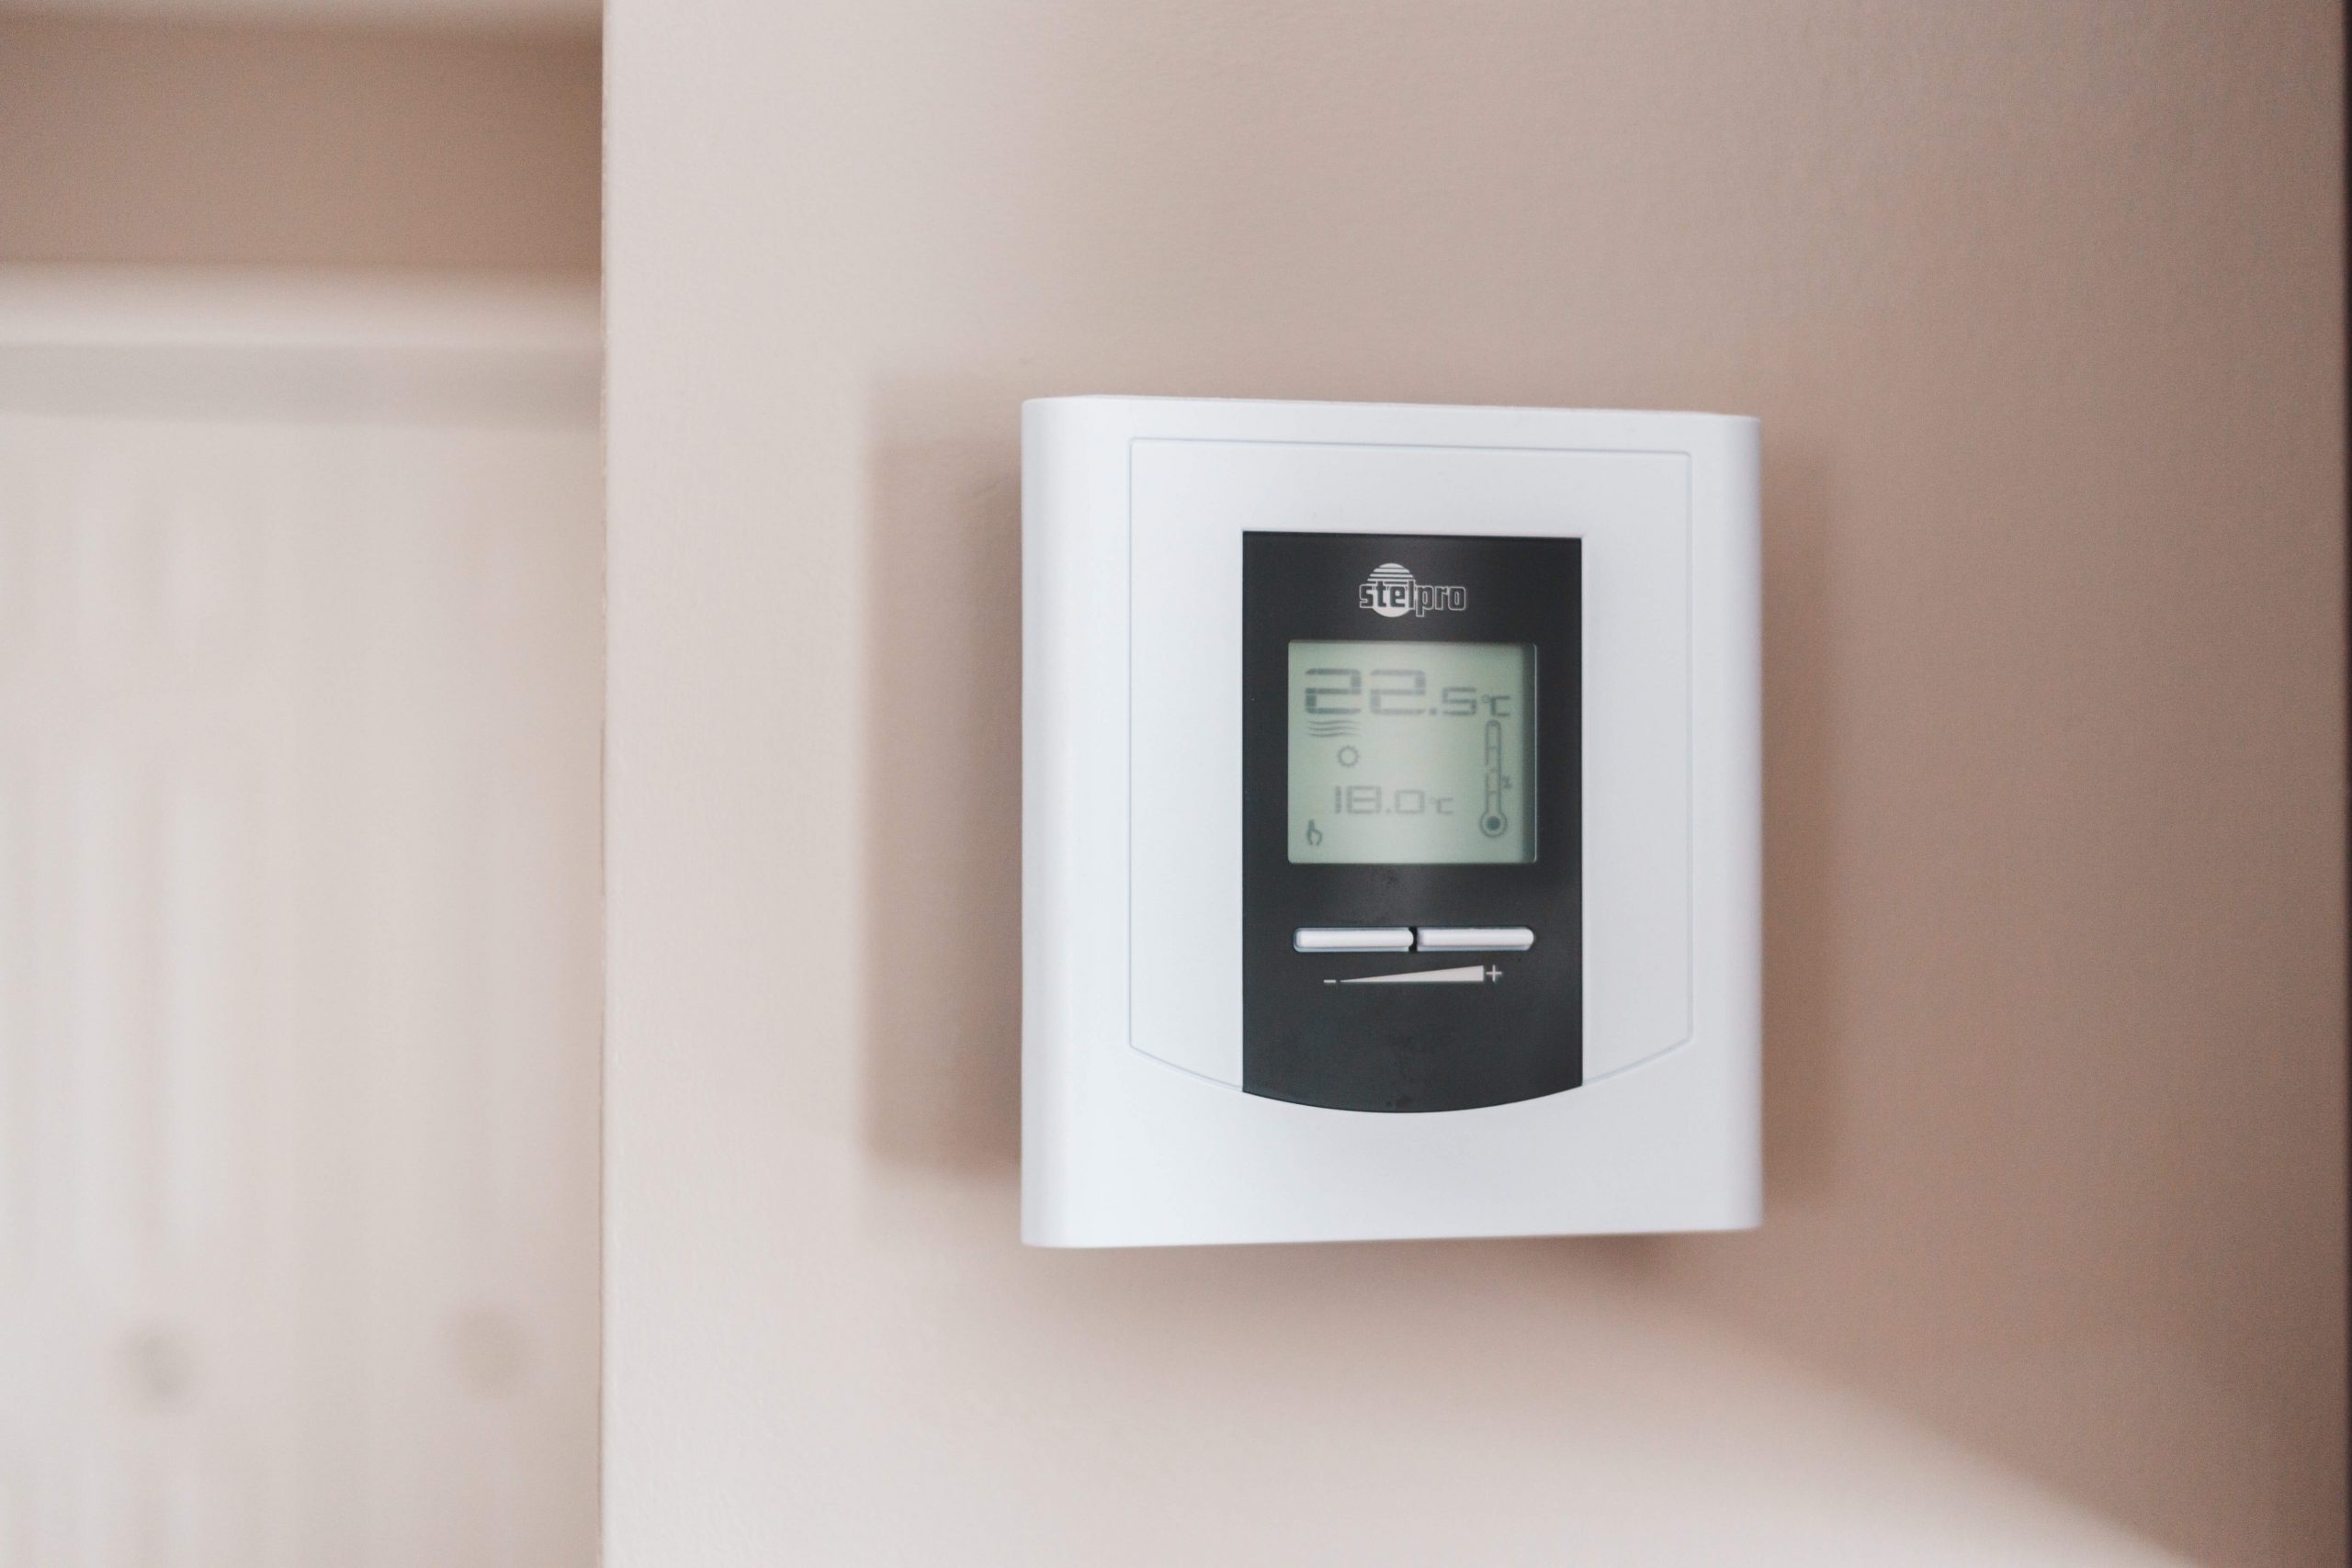 Il termostato della caldaia: cos’è e come utilizzarlo